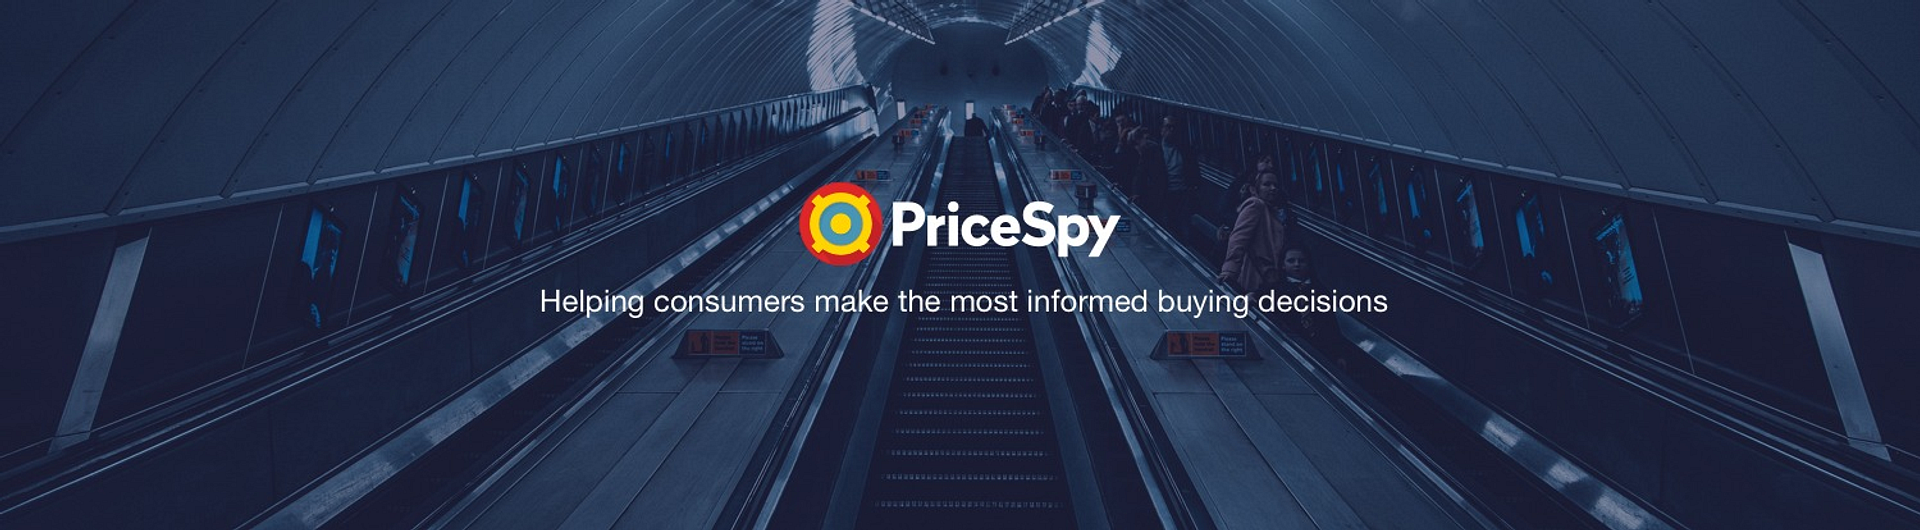 PriceSpy.co.uk